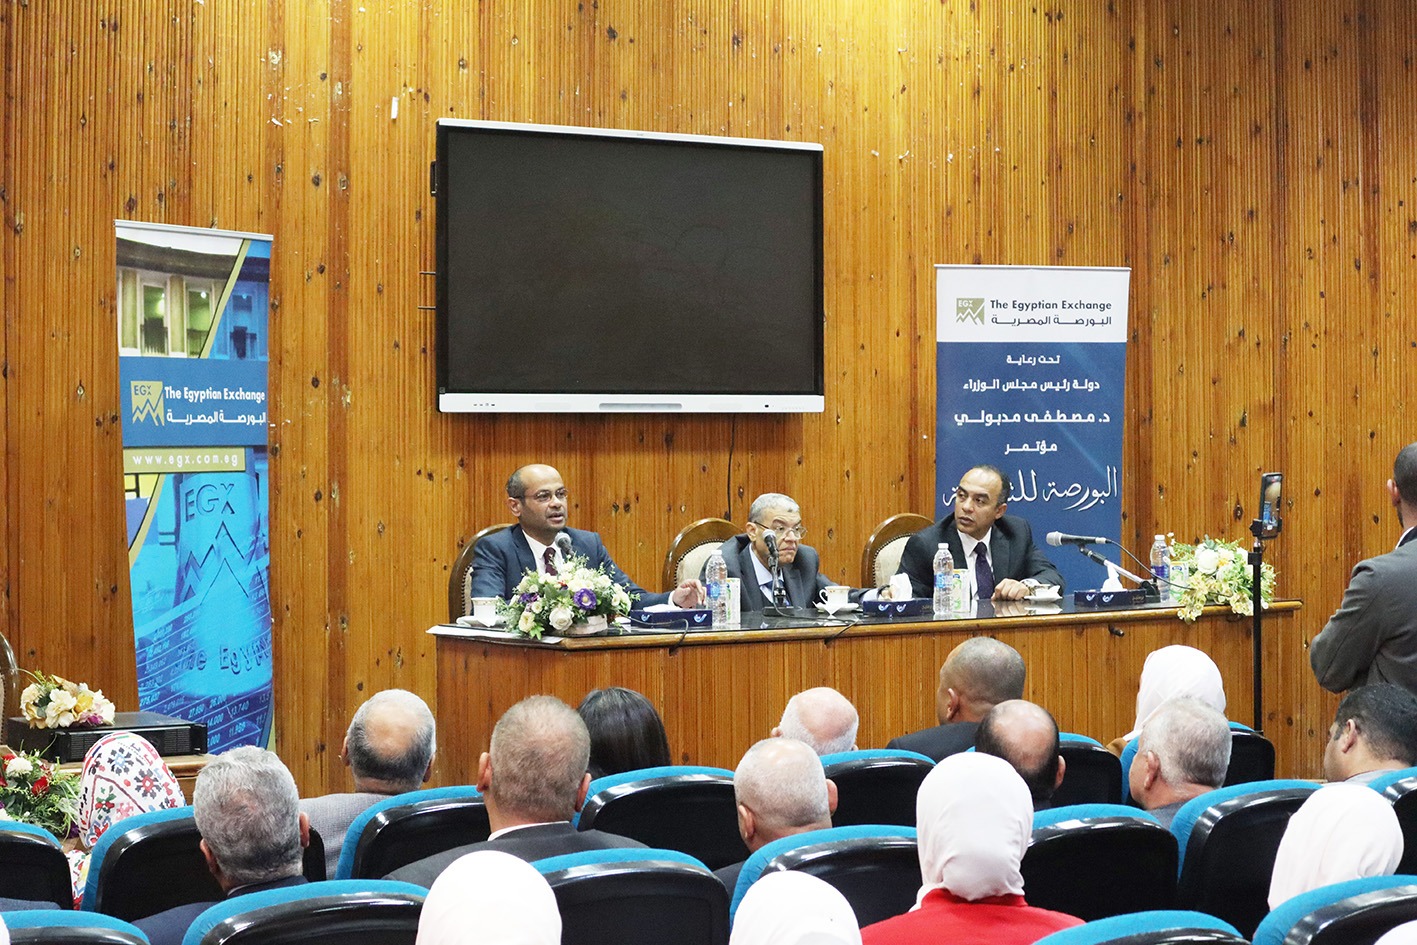 البورصة المصرية تعقد النسخة الخامسة من مؤتمر "البورصة للتنمية" في محافظة المنيا